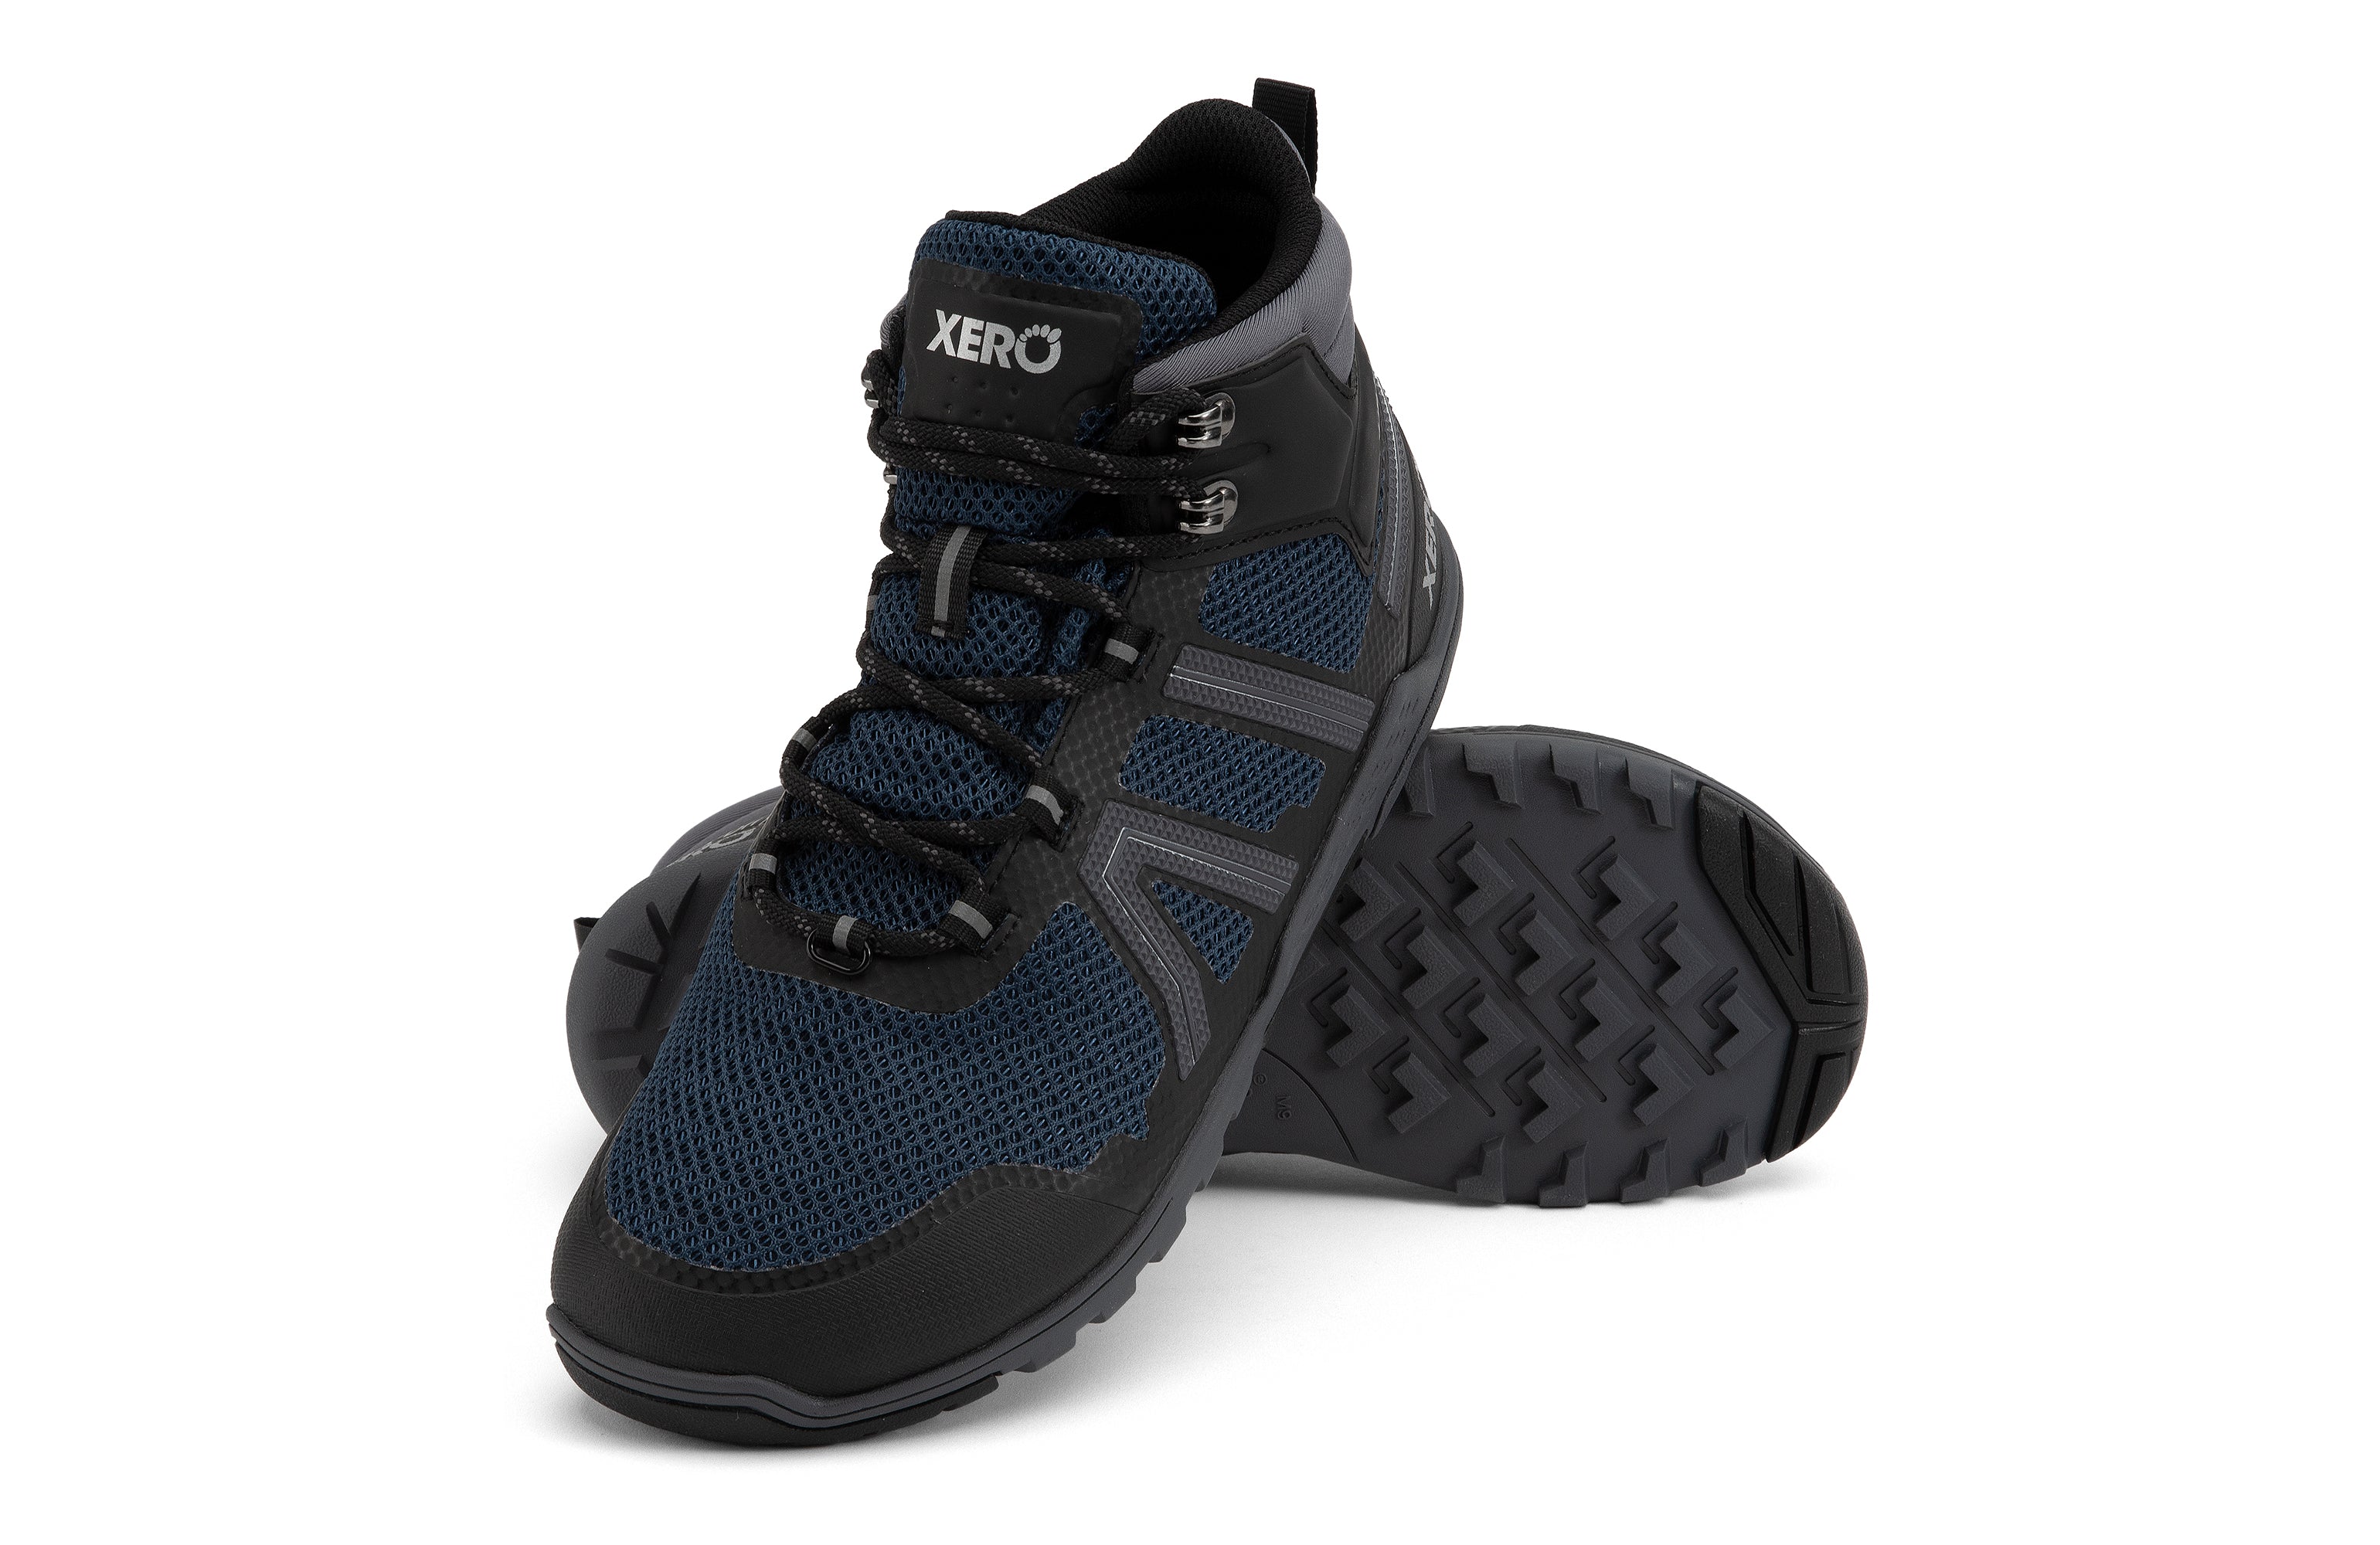 Xero Shoes Xcursion Fusion barfods støvler til mænd i farven moonlit blue / black, par